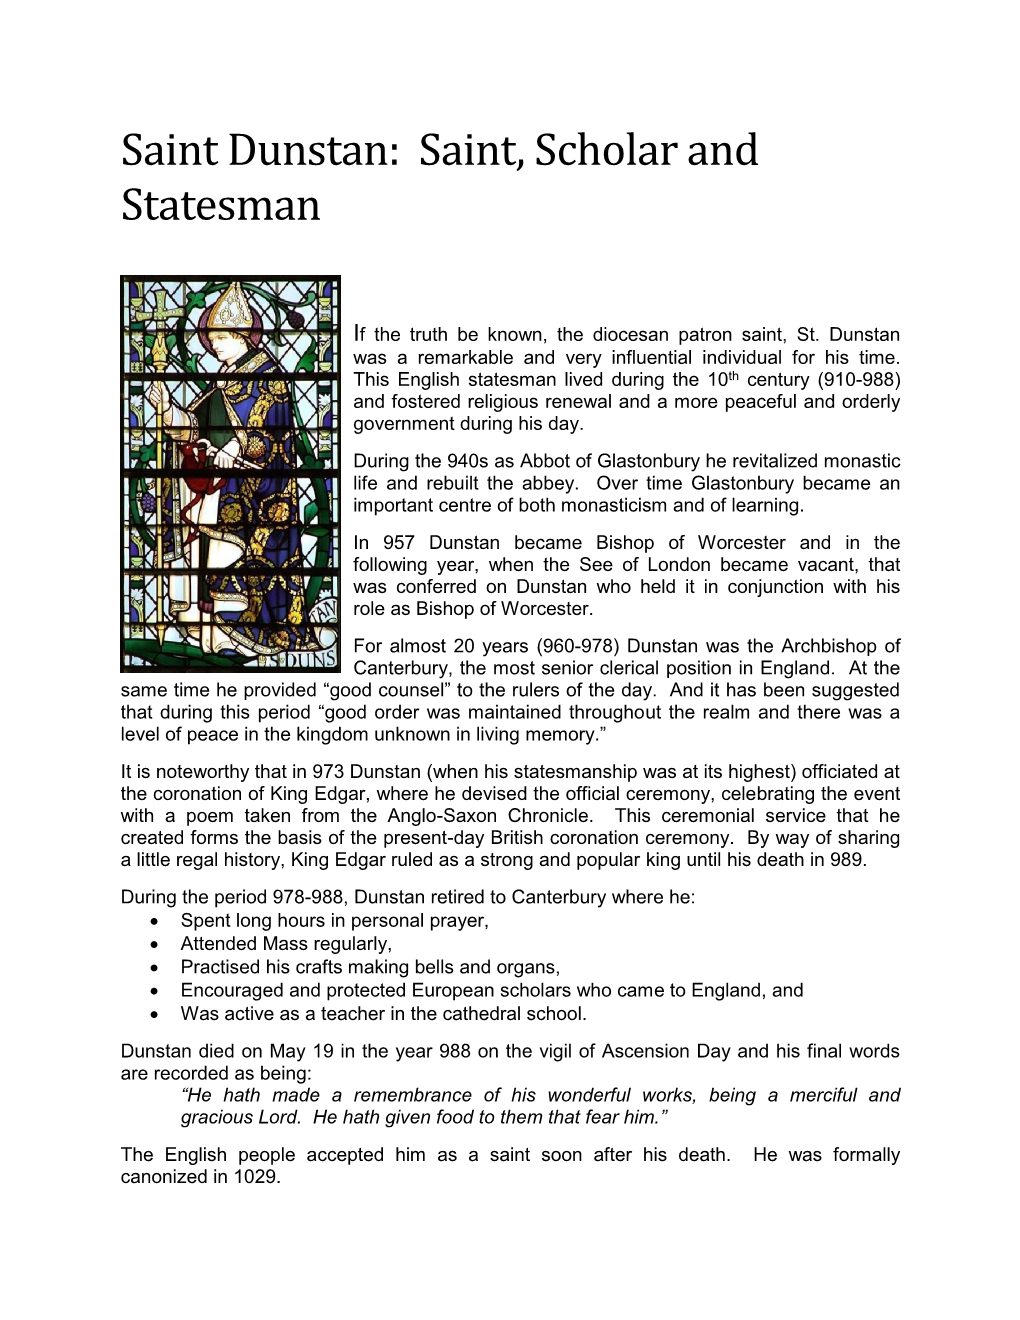 Saint Dunstan: Saint, Scholar and Statesman